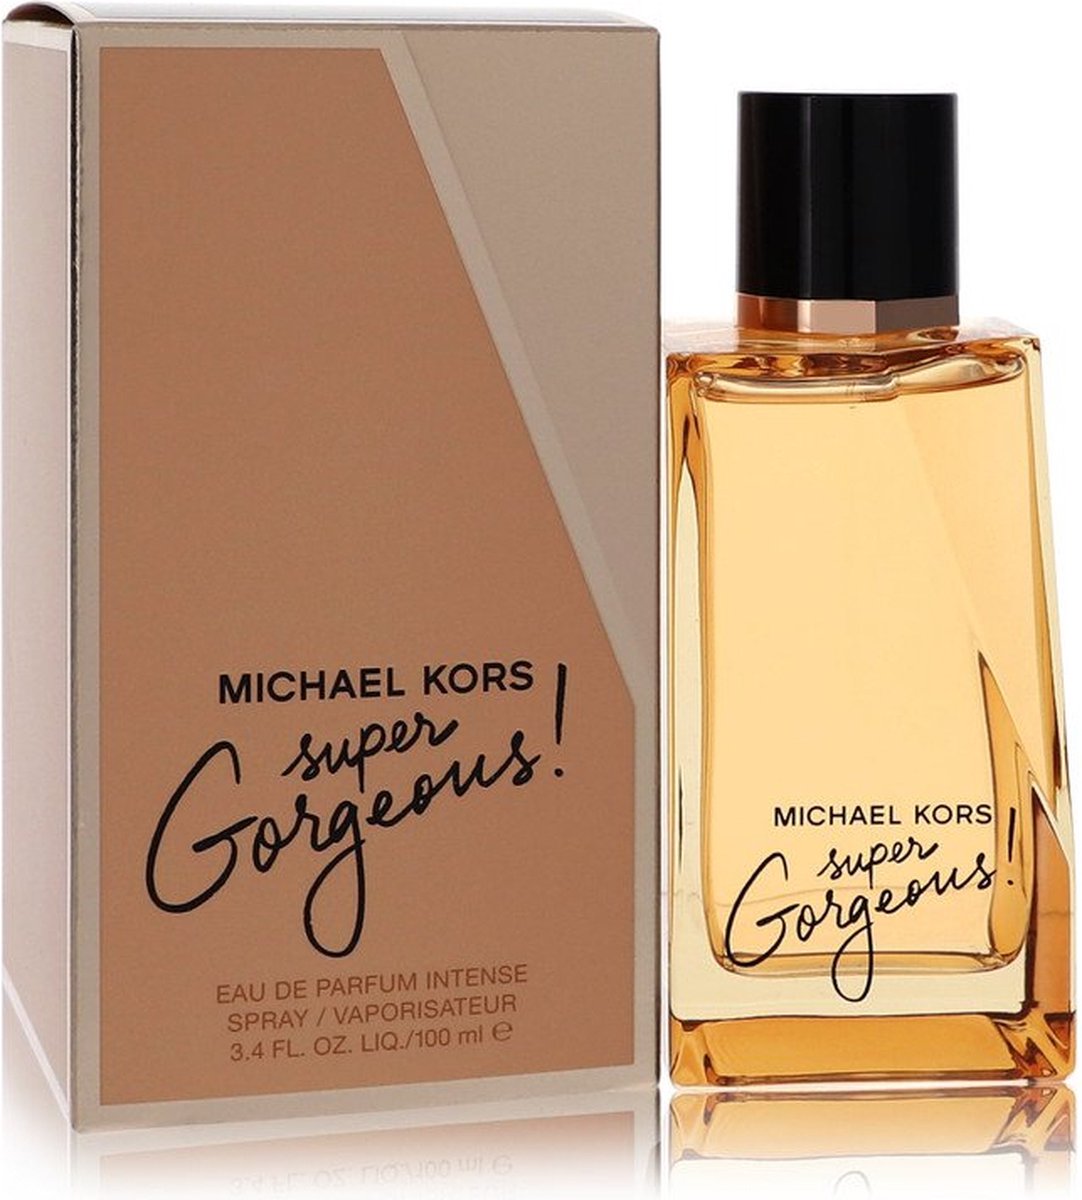 Michael Kors Super Gorgeous! Eau De Parfum 100 Ml Woman